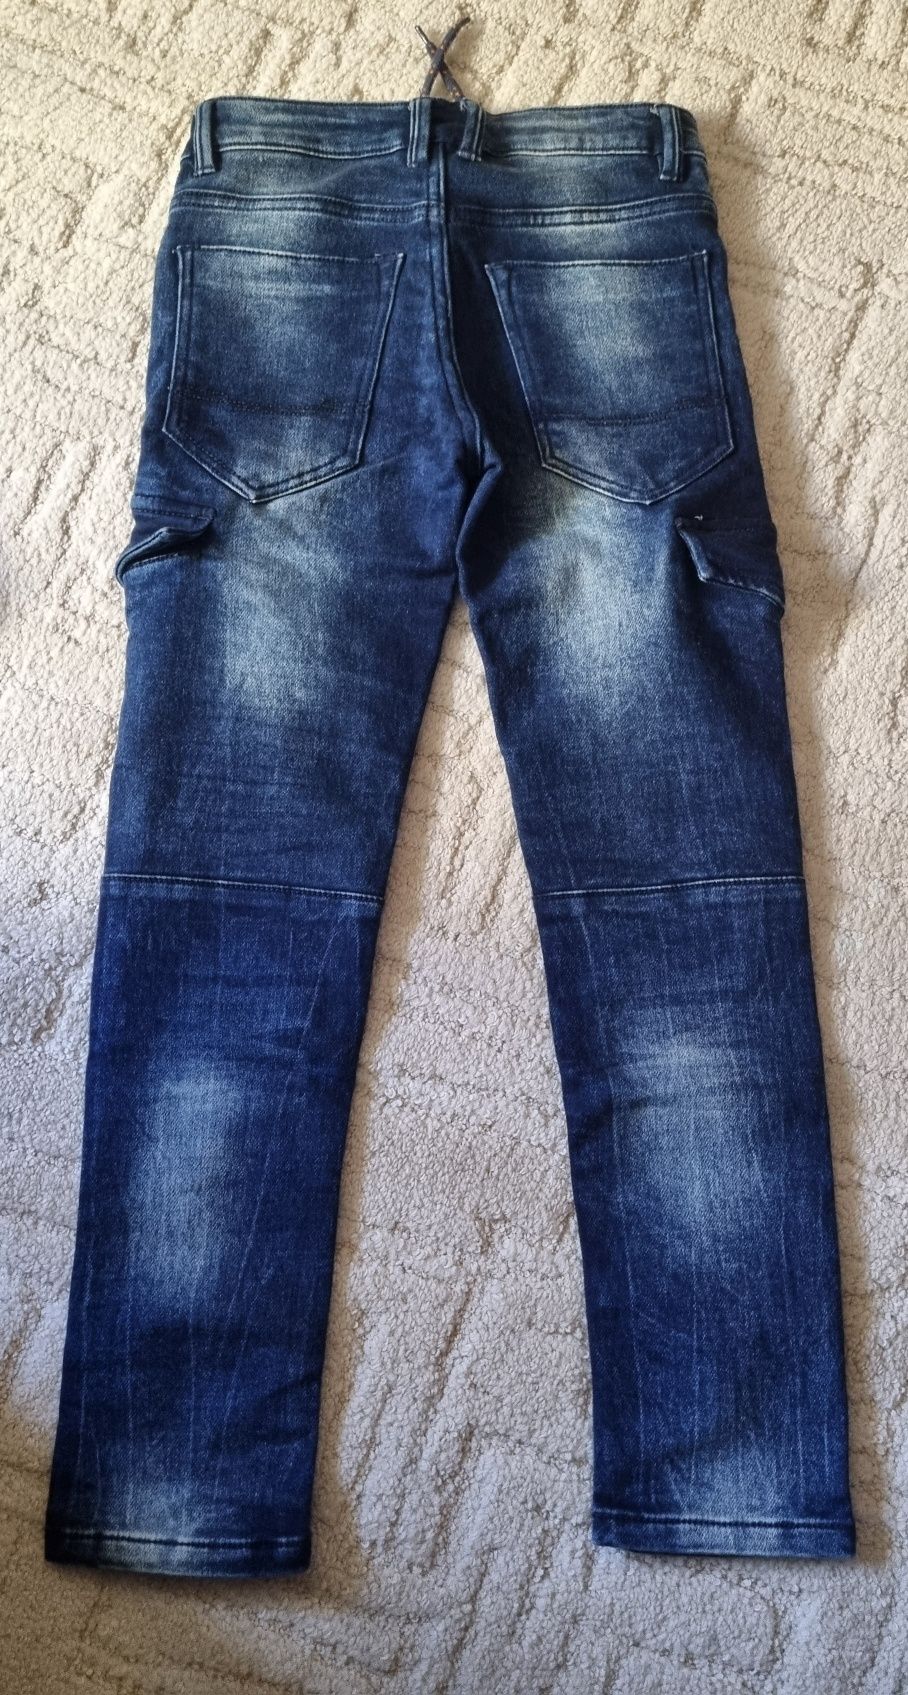 Spodnie jeans chłopięce rozmiar 140